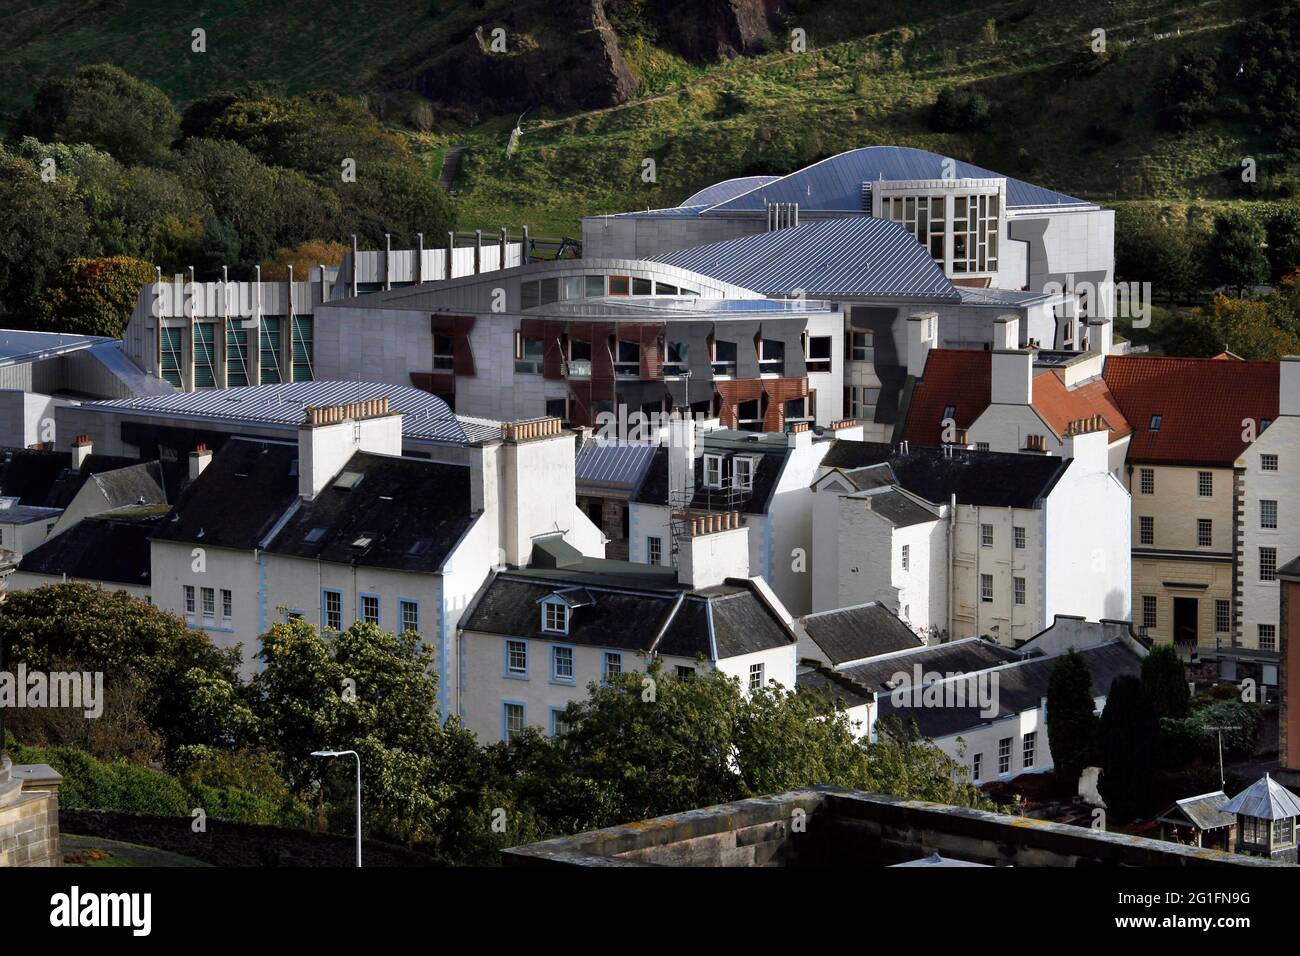 Schottisches Parlament, Parlament von Schottland, Architekt Enric Miralles, Blick vom Calton Hill, Holyrood, Edinburgh, Schottland, Vereinigtes Königreich Stockfoto